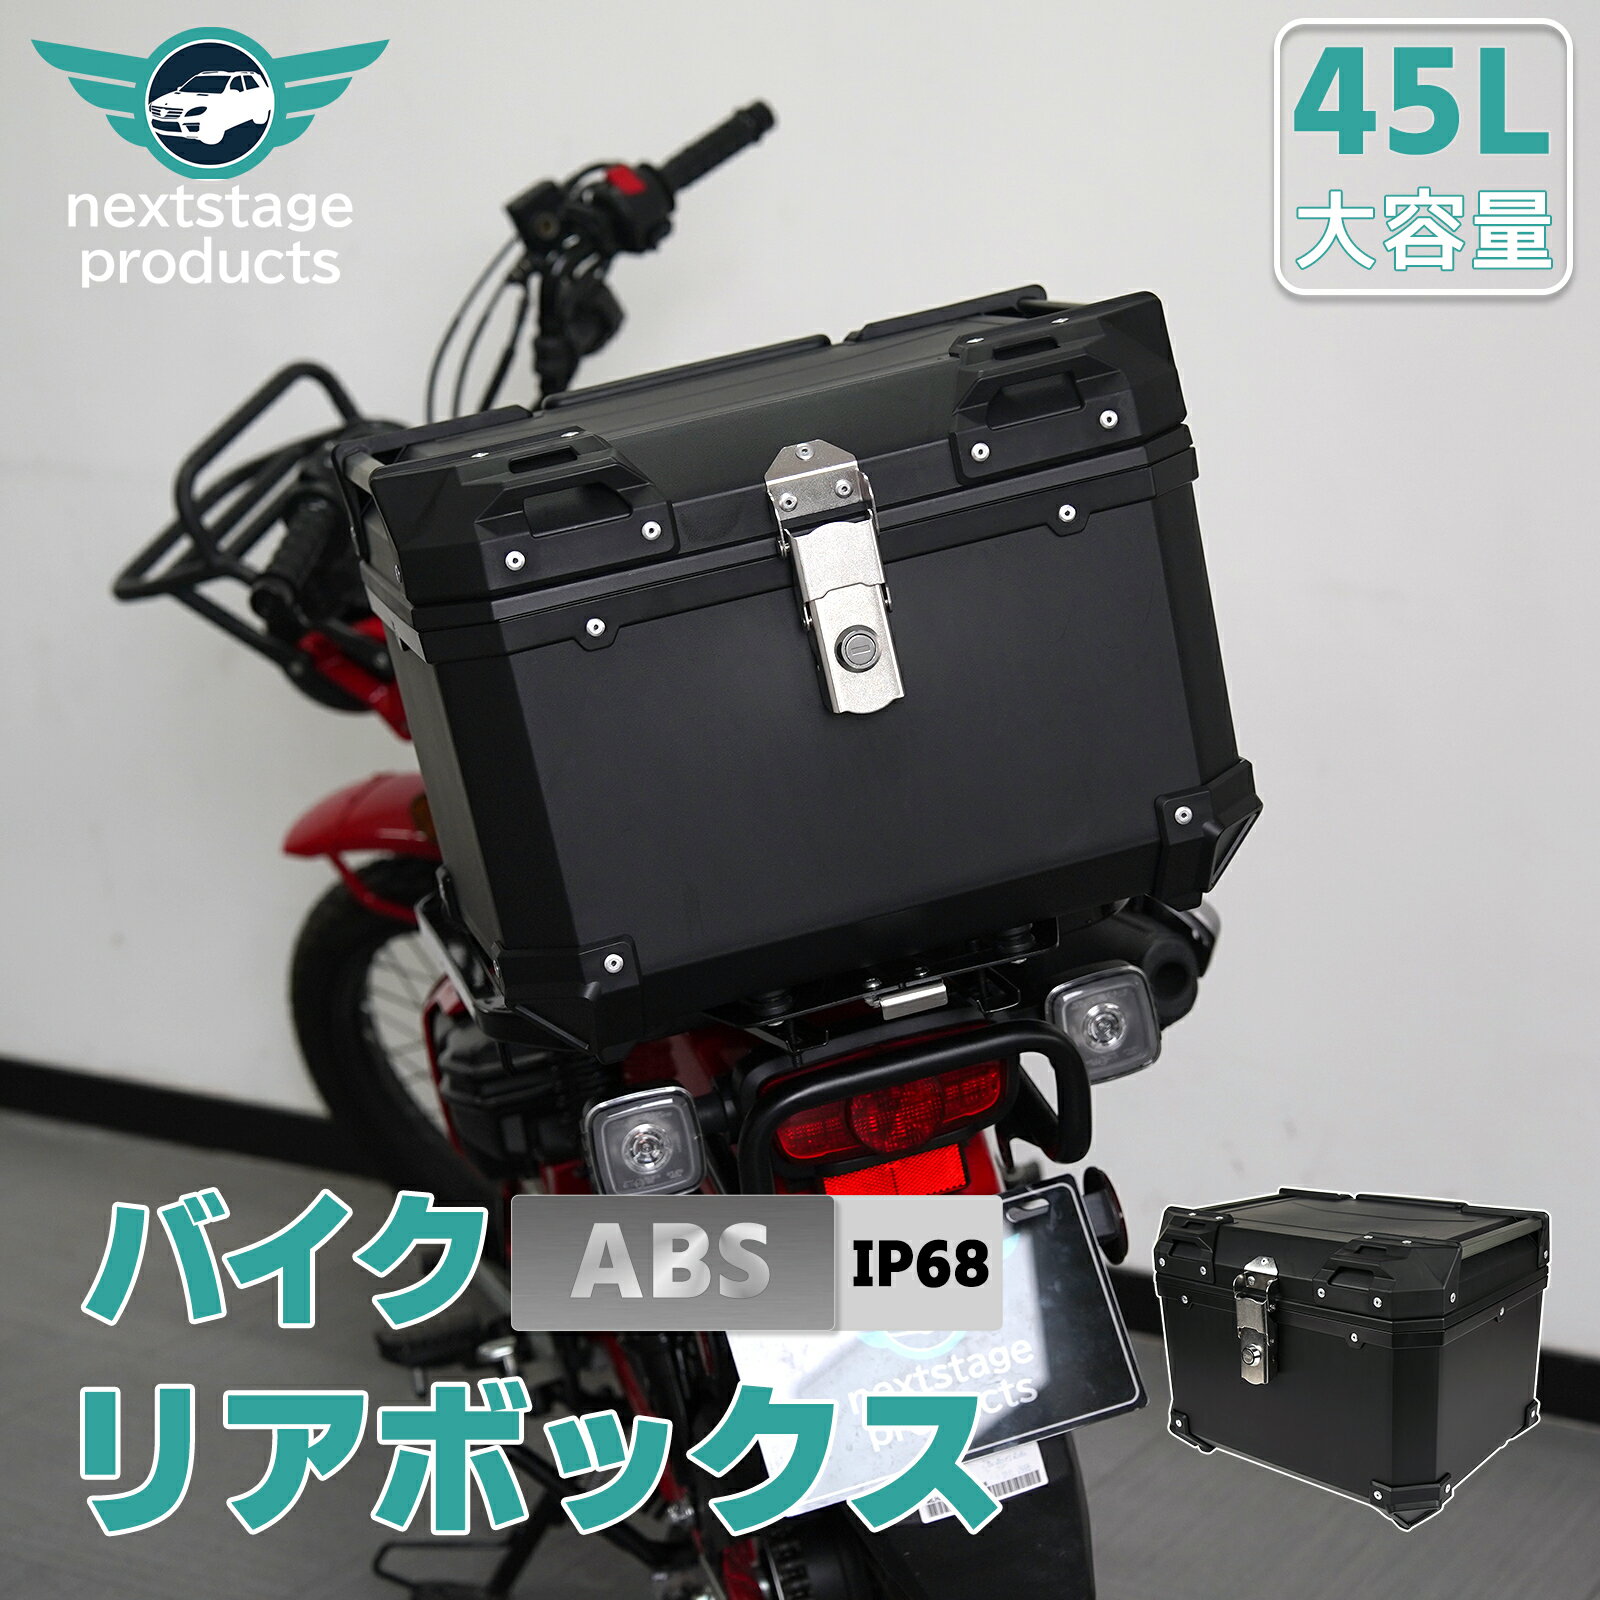 45L 大容量 リアボックス ABS バイク バイク用 スーパーカブ クロスカブ ハンターカブ 防水 耐衝撃 トップケース リアケース バイクキャリー 着脱可能 鍵付 汎用